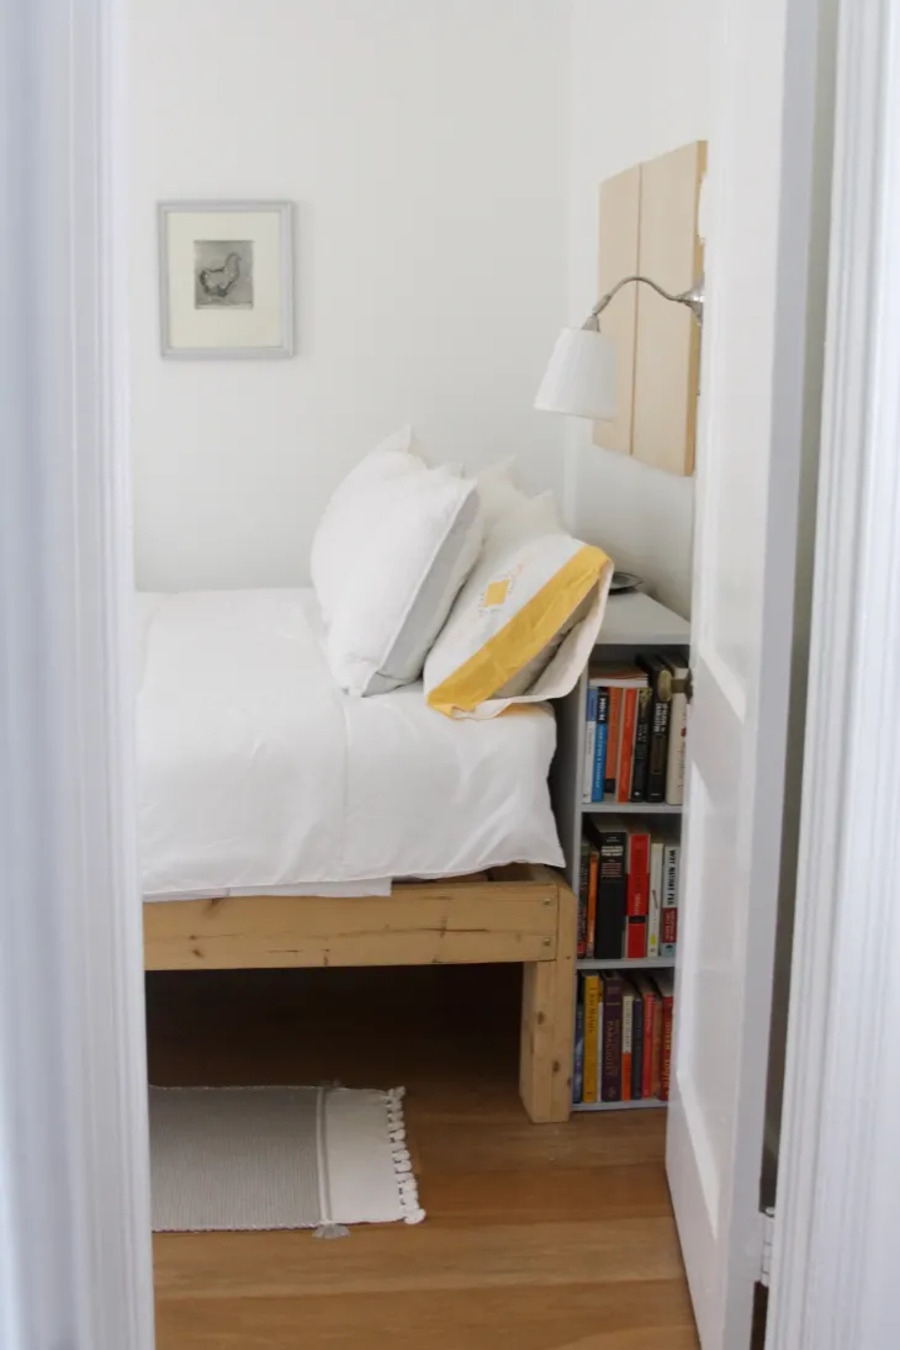 Cama de dos plazas con base de madera. Detrás de la cama hay un mueble angosto de madera con varios libros. Lámpara de muro metálica con pantalla blanca. Las paredes son blancas y el piso es de madera.